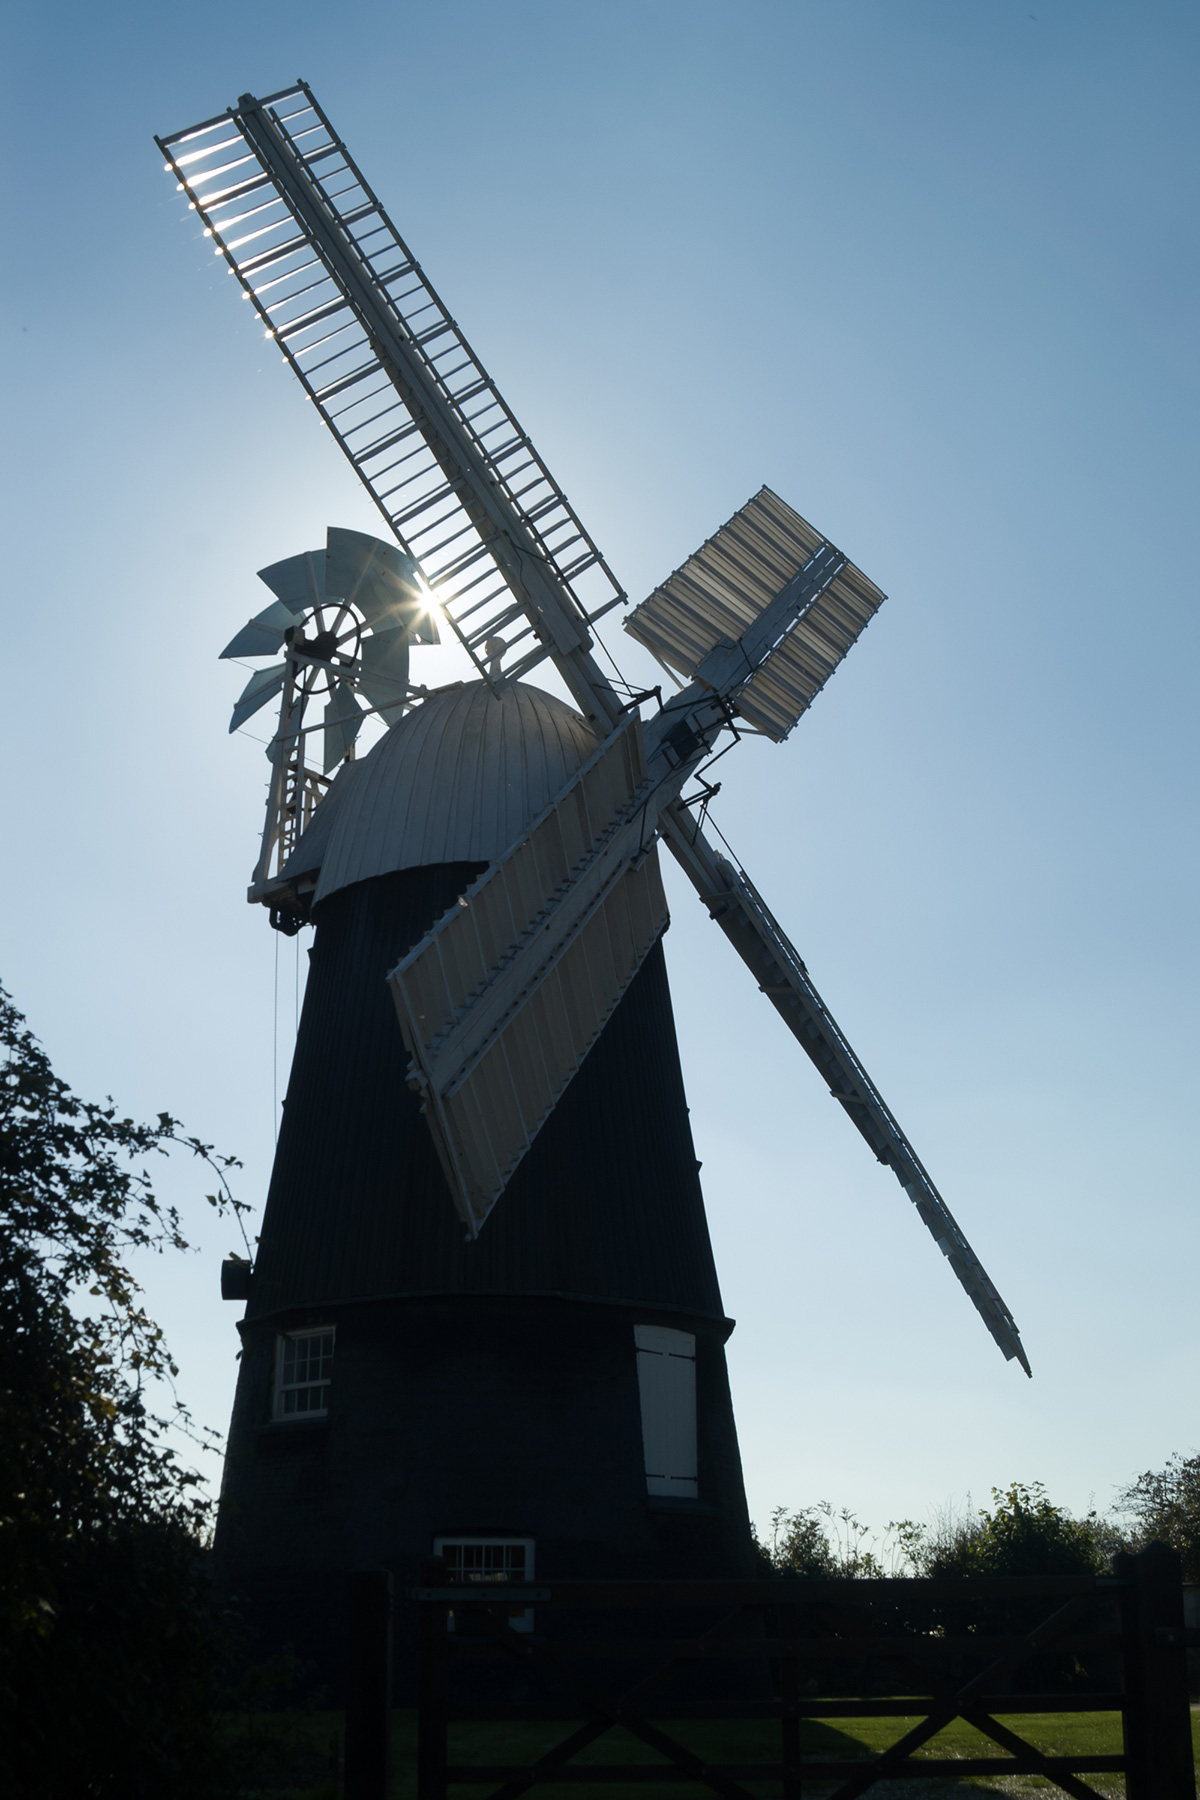 wicken fen windmill